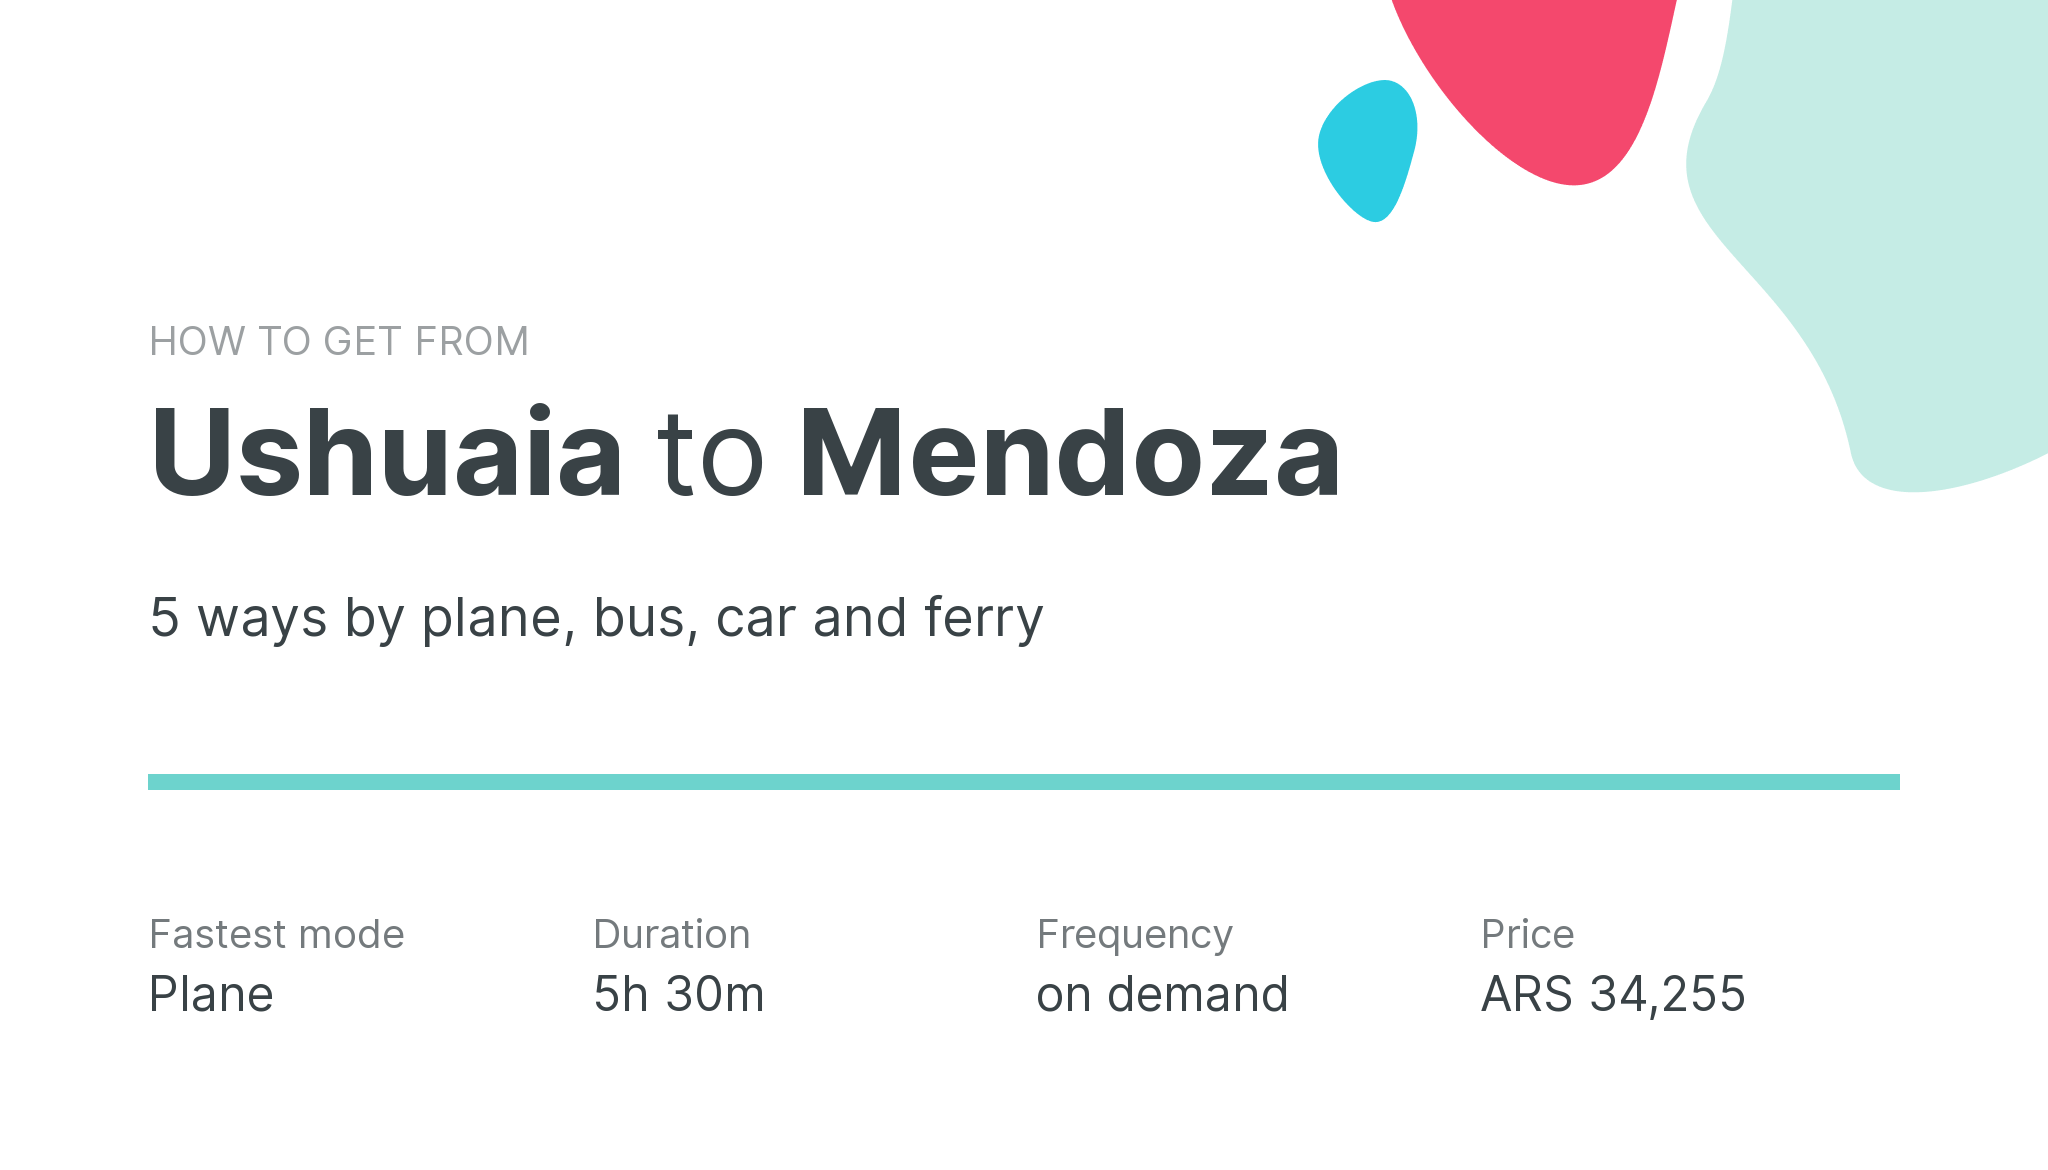 How do I get from Ushuaia to Mendoza